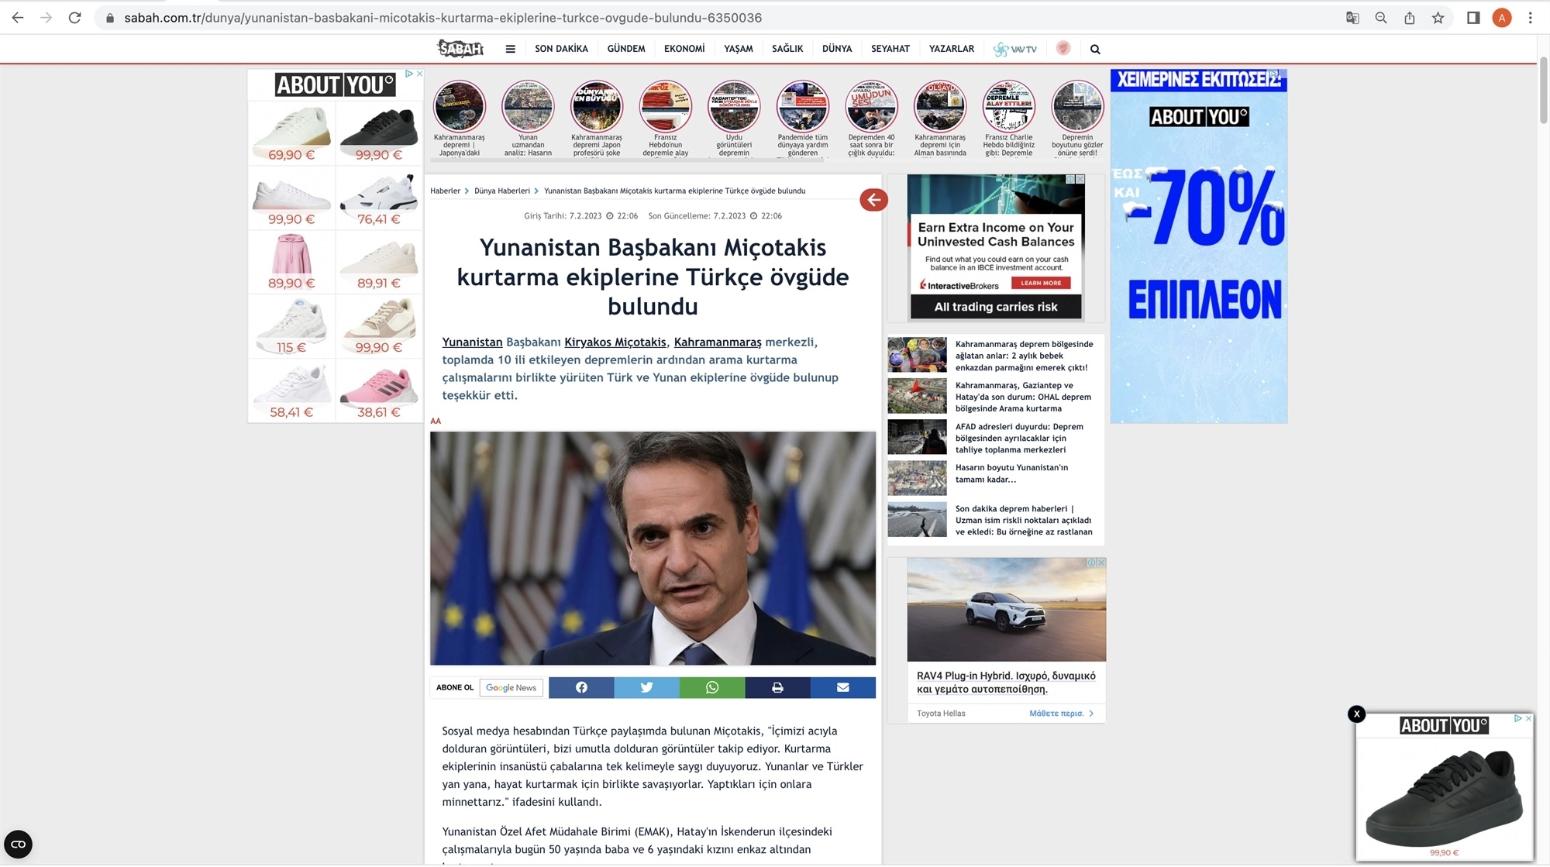 Τουρκικά ΜΜΕ: «Ο γείτονας μοιράστηκε τον πόνο»